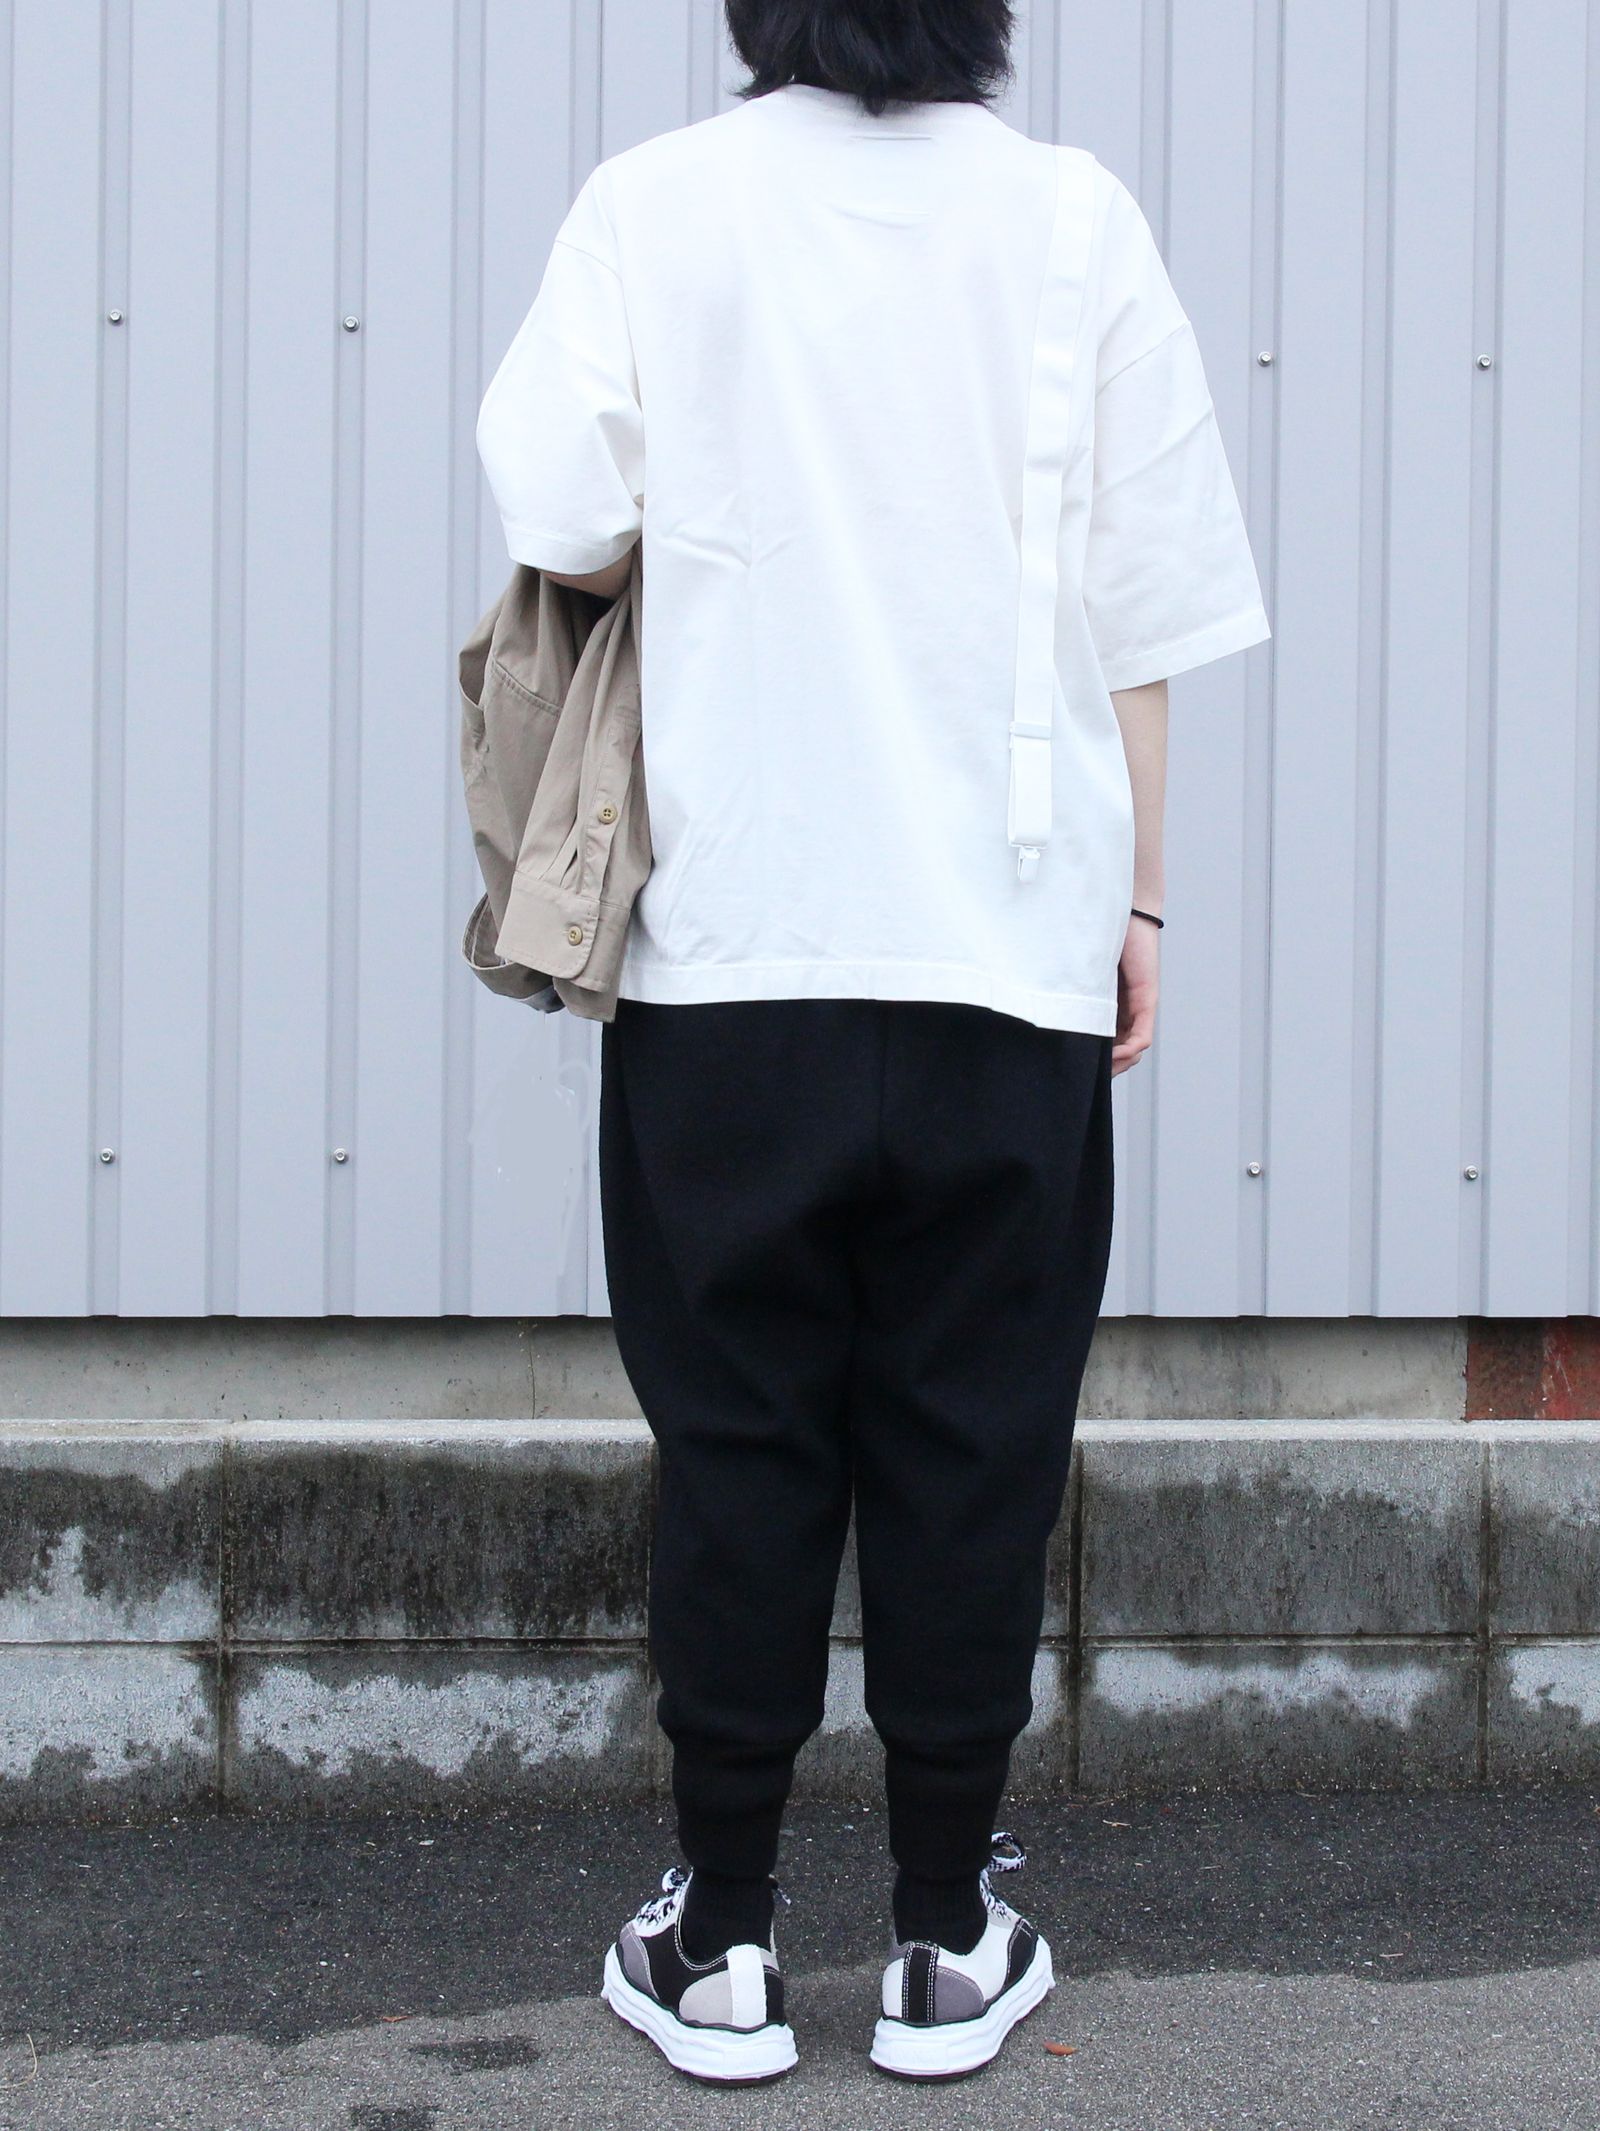 MIHARA YASUHIRO ミハラヤスヒロ 21SS suspendar T-shirt ロゴプリント クルーネック半袖Tシャツ ブラック A06TS662